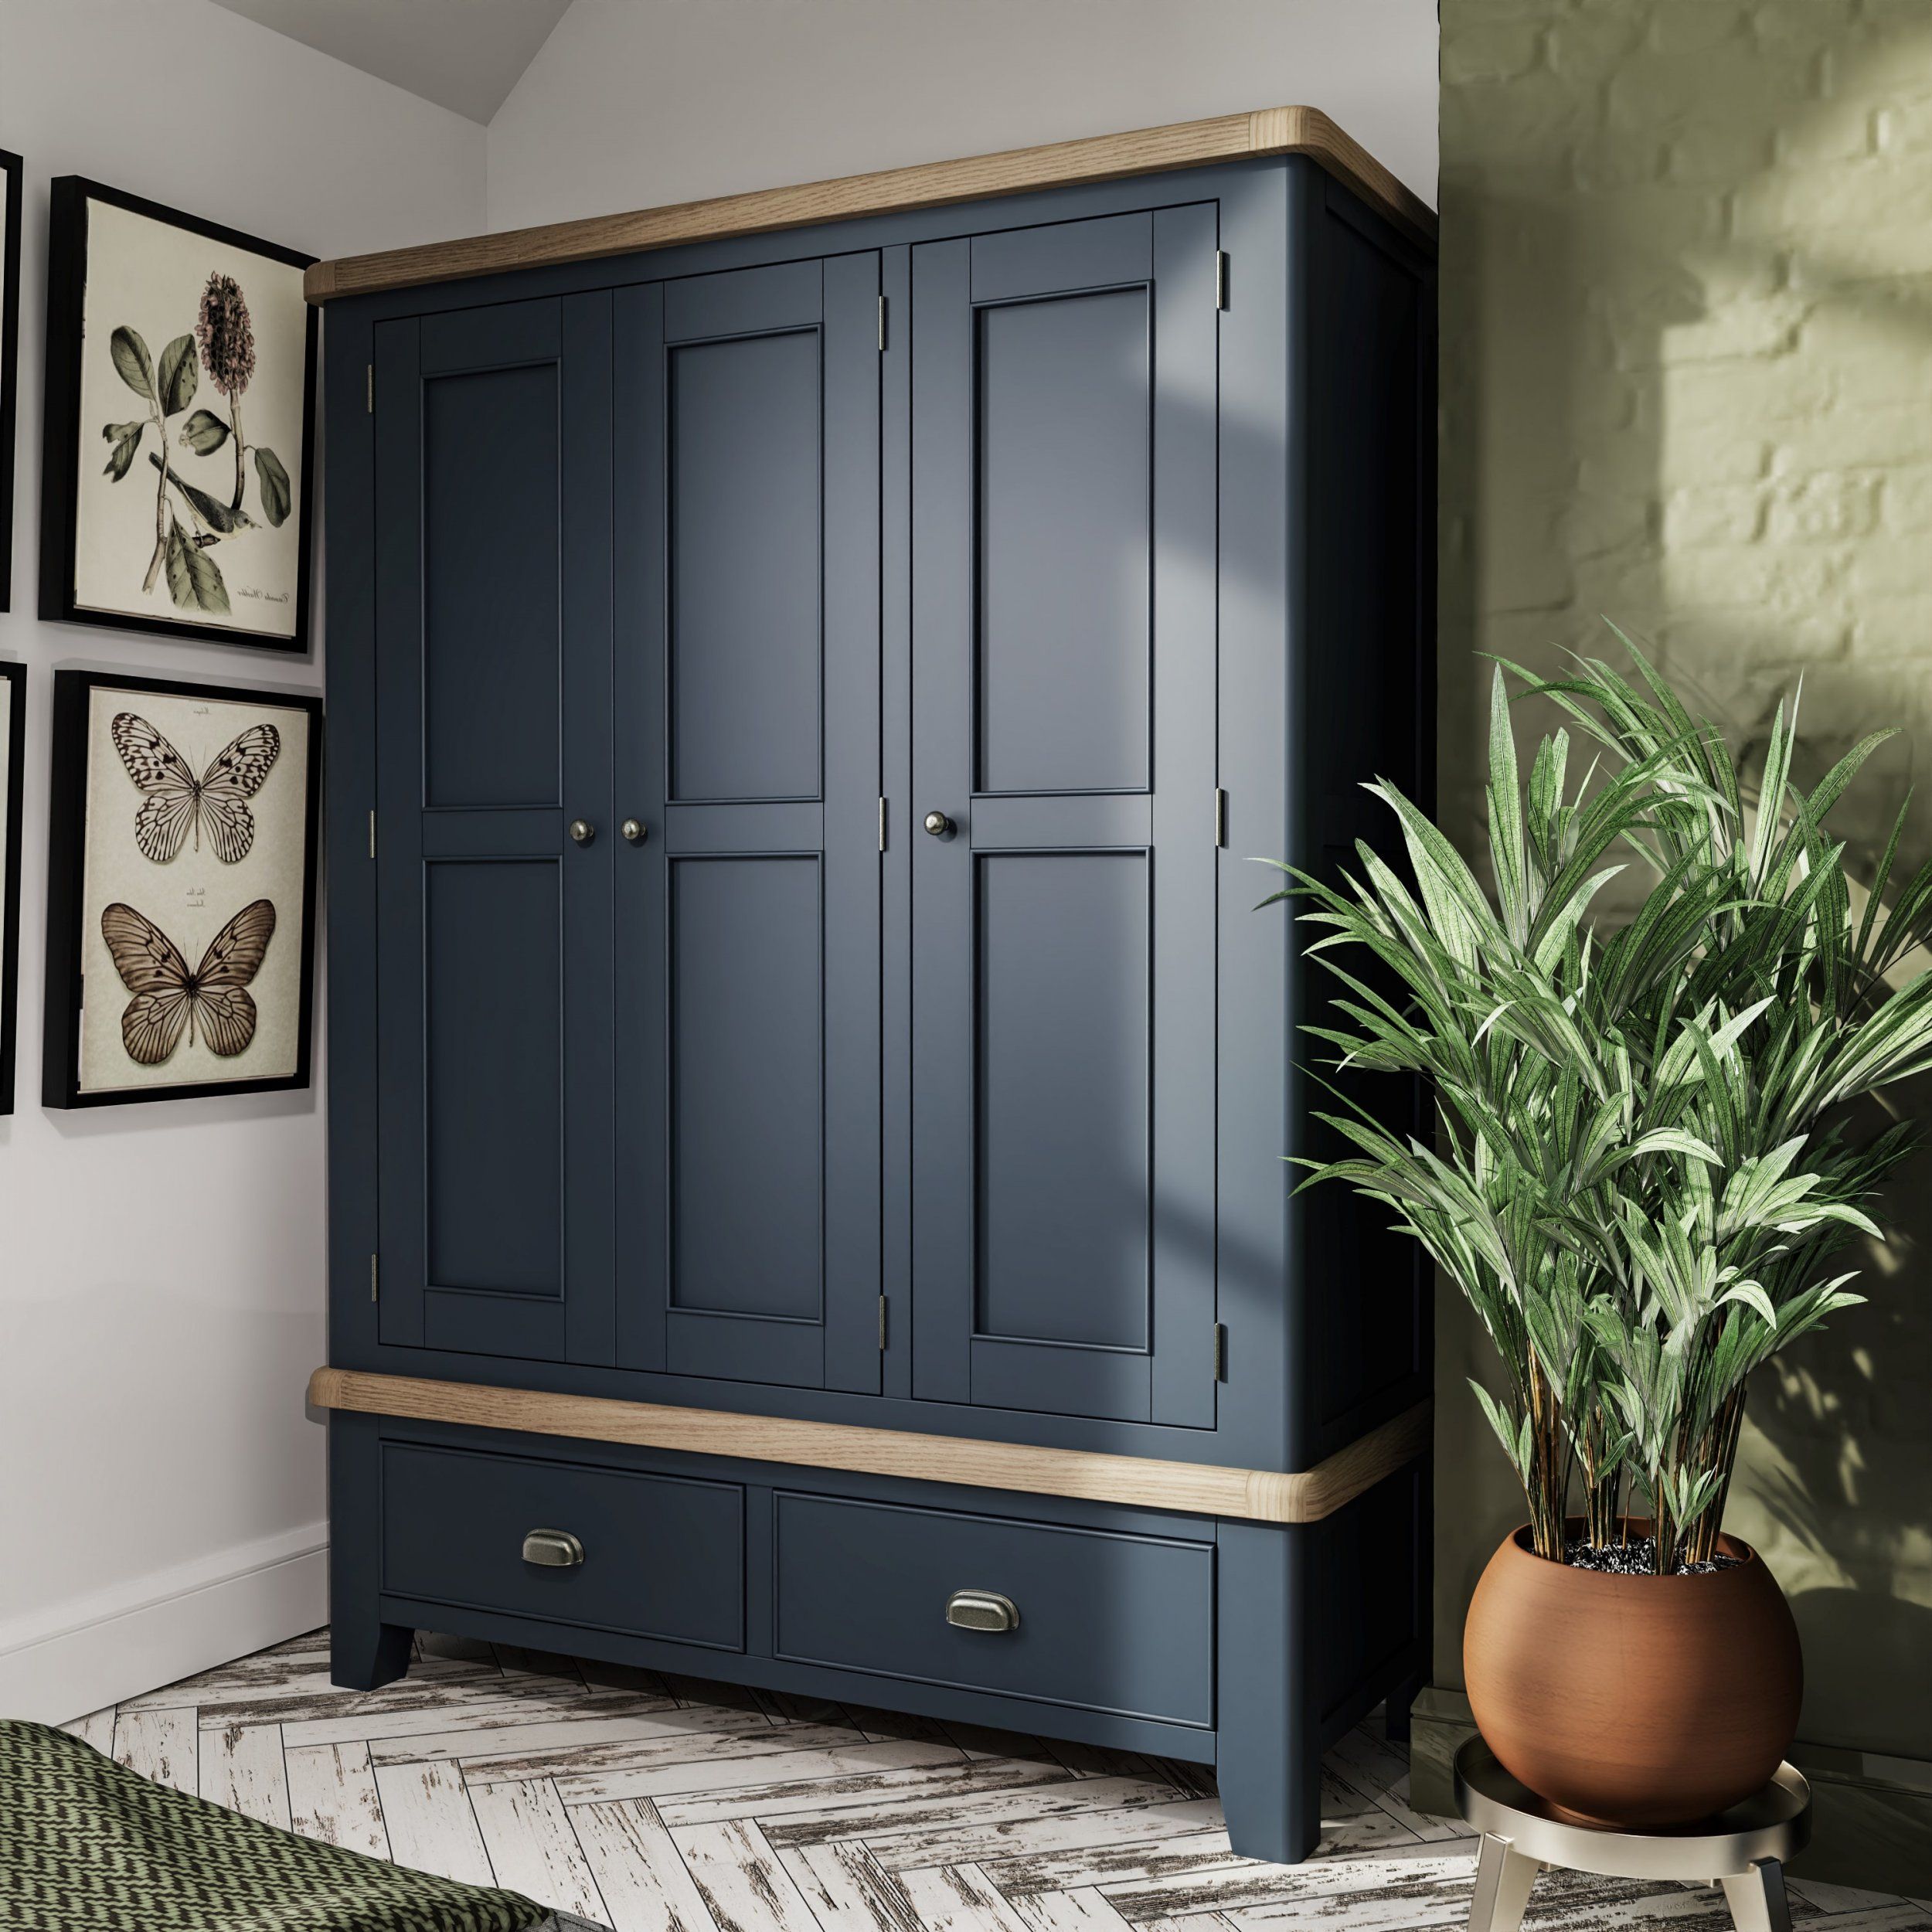 Haxby Oak Painted Bedroom 3 Door Wardrobe – Blue | The Clearance Zone In 3 Door Wardrobes (View 5 of 15)